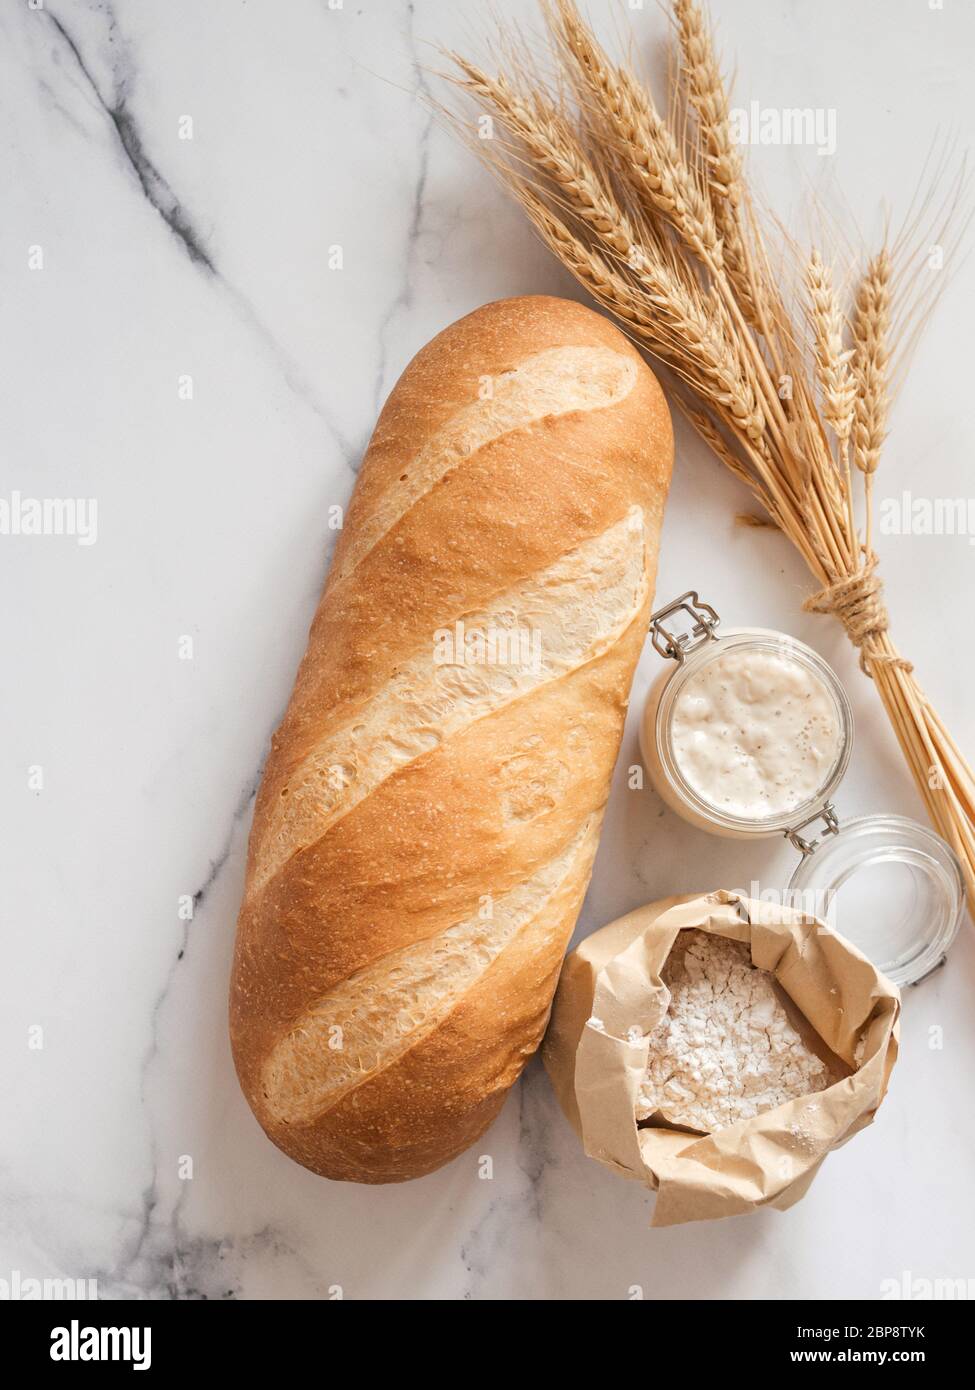 Britisches Weißblüher oder europäischer Sauerteig Baton-Brot auf weißem Marmorgrund. Frisches Brot und Glas mit Sauerteig Starter, Mehl in Papiertüte, Ohren. Draufsicht. Kopierbereich. Vertikal Stockfoto